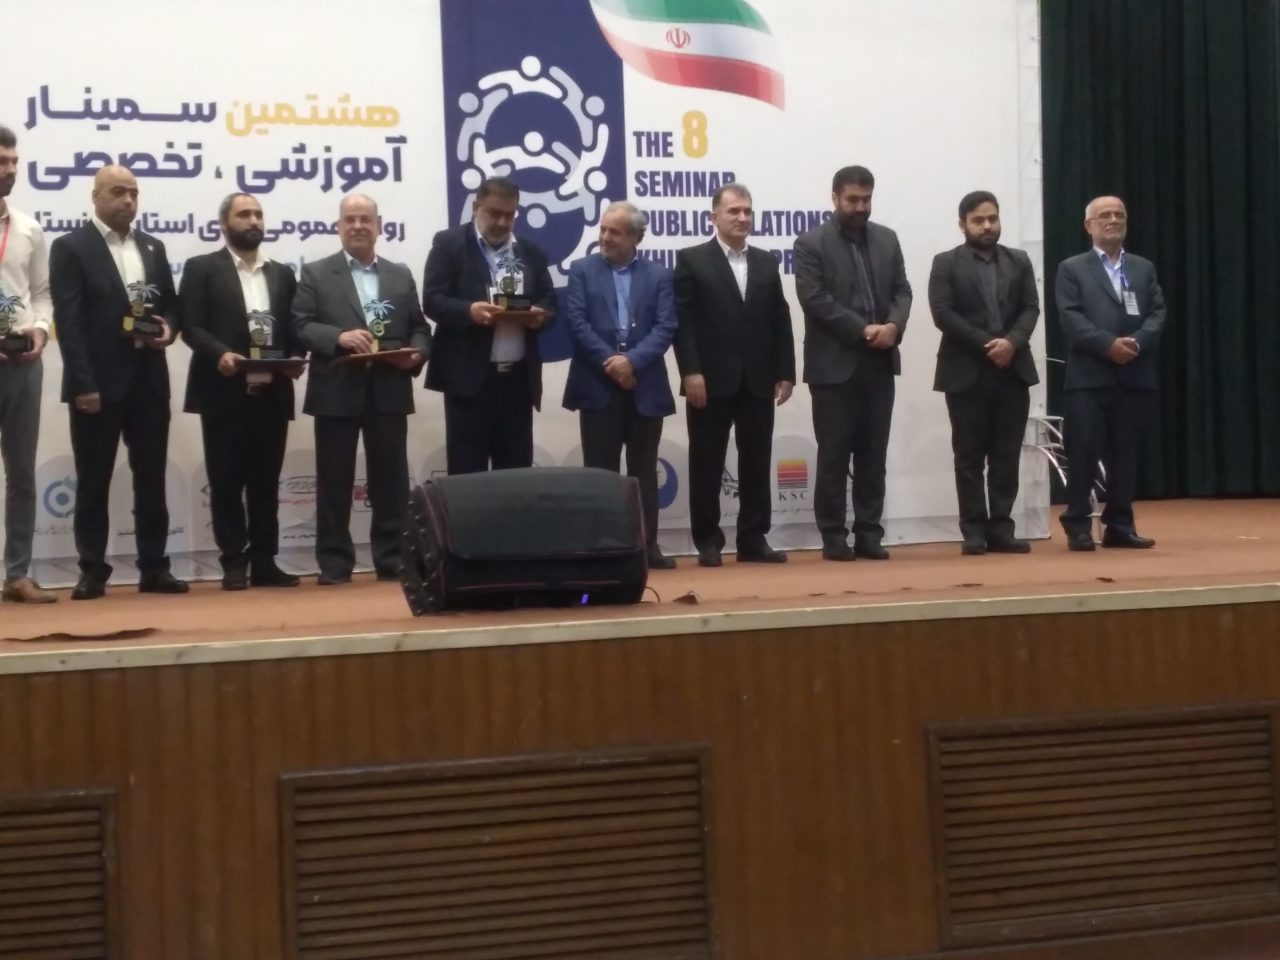 ۲۰۲۲۱۱۲۰ ۱۰۴۲۳۷ 1280x960 هشتمین سمینار آموزشی و تخصصی روابط عمومی های استان خوزستان